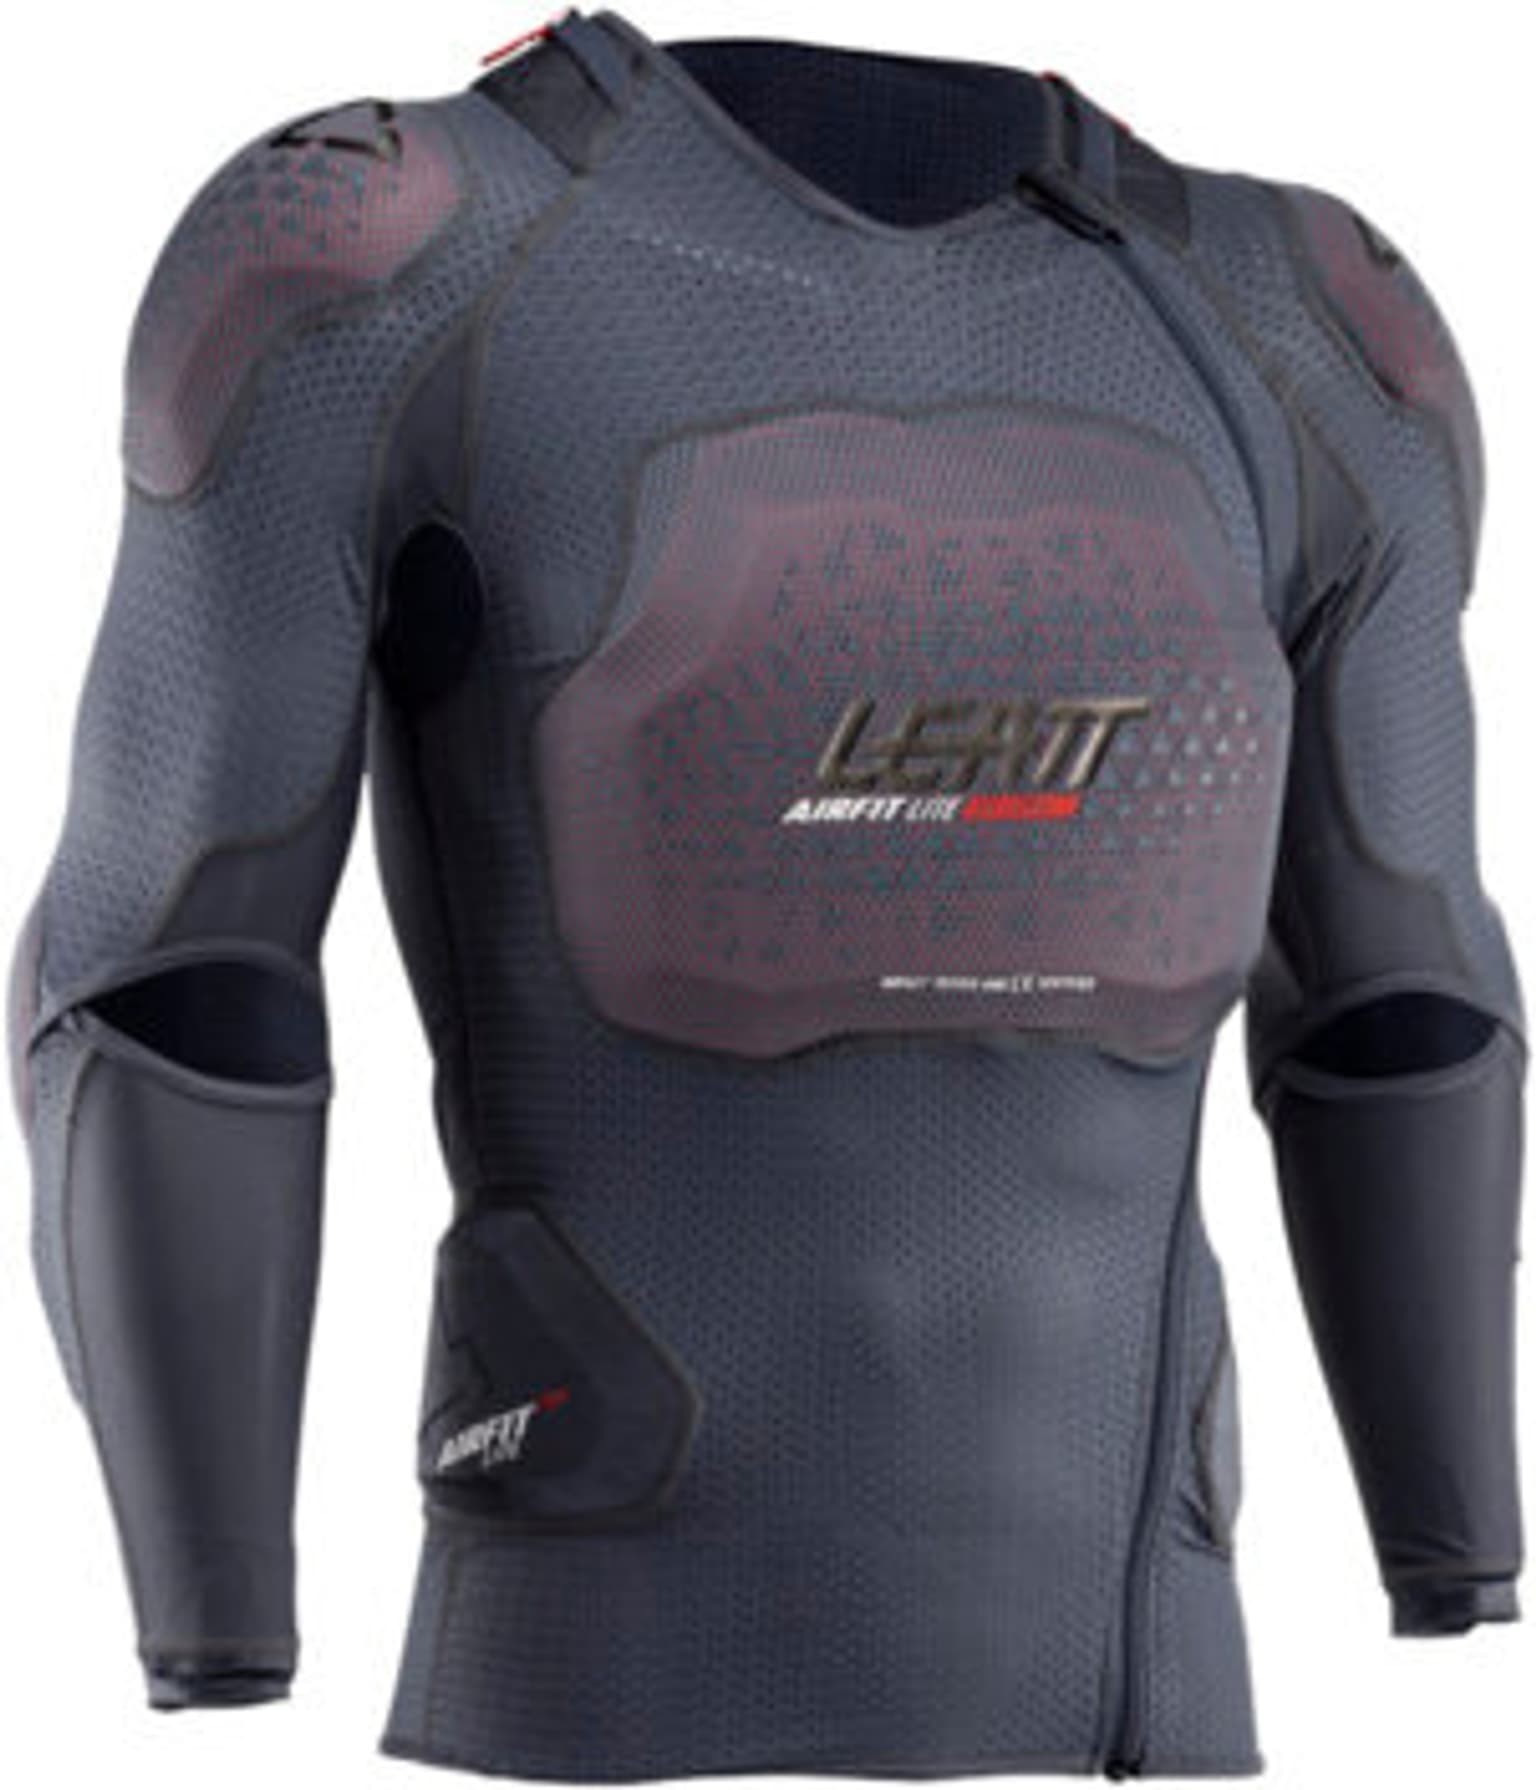 Leatt Leatt 3DF Body Protector Airfit lite Evo Protezione nero 1